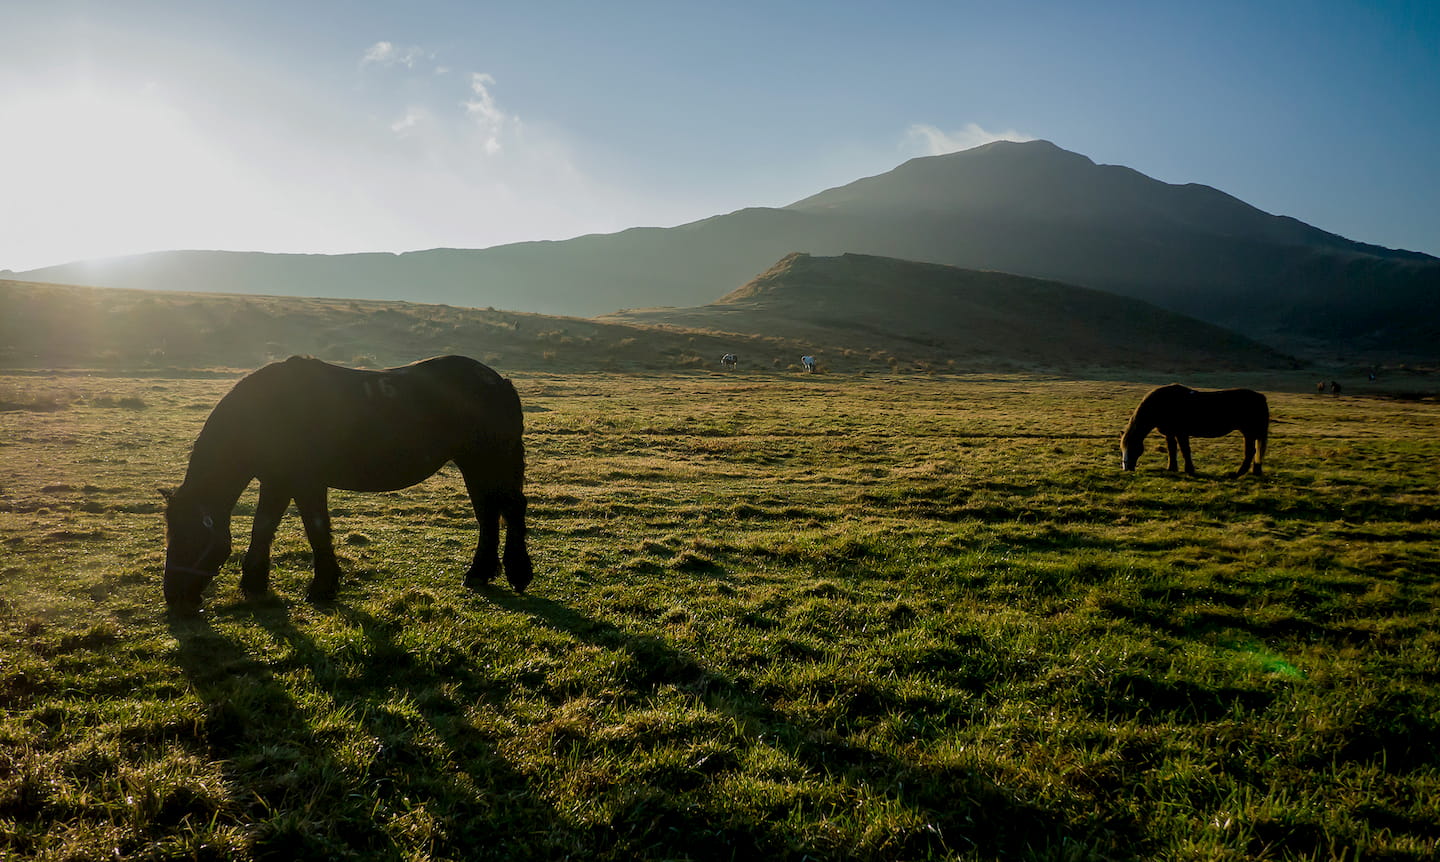 草原と馬